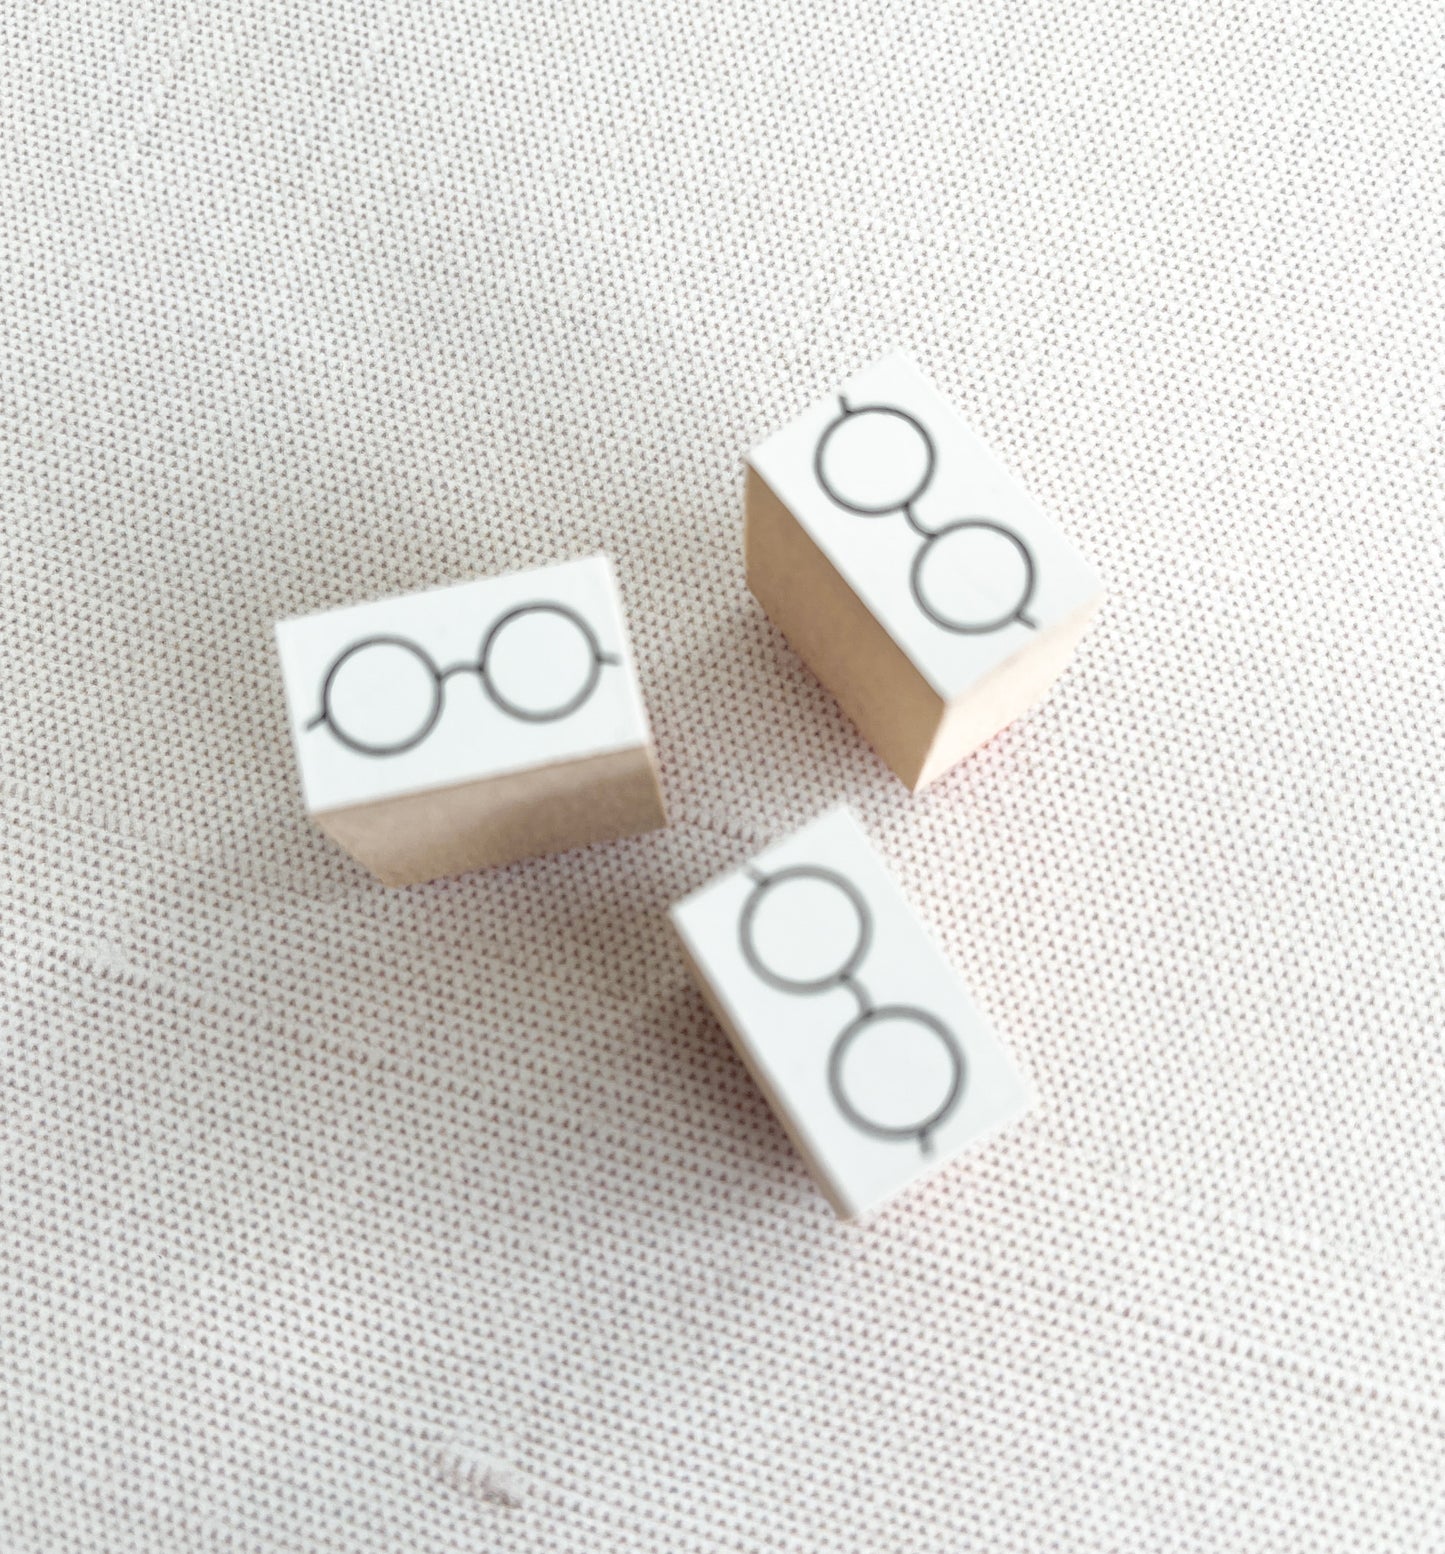 Hanko Eyeglasses Rubber Stamp